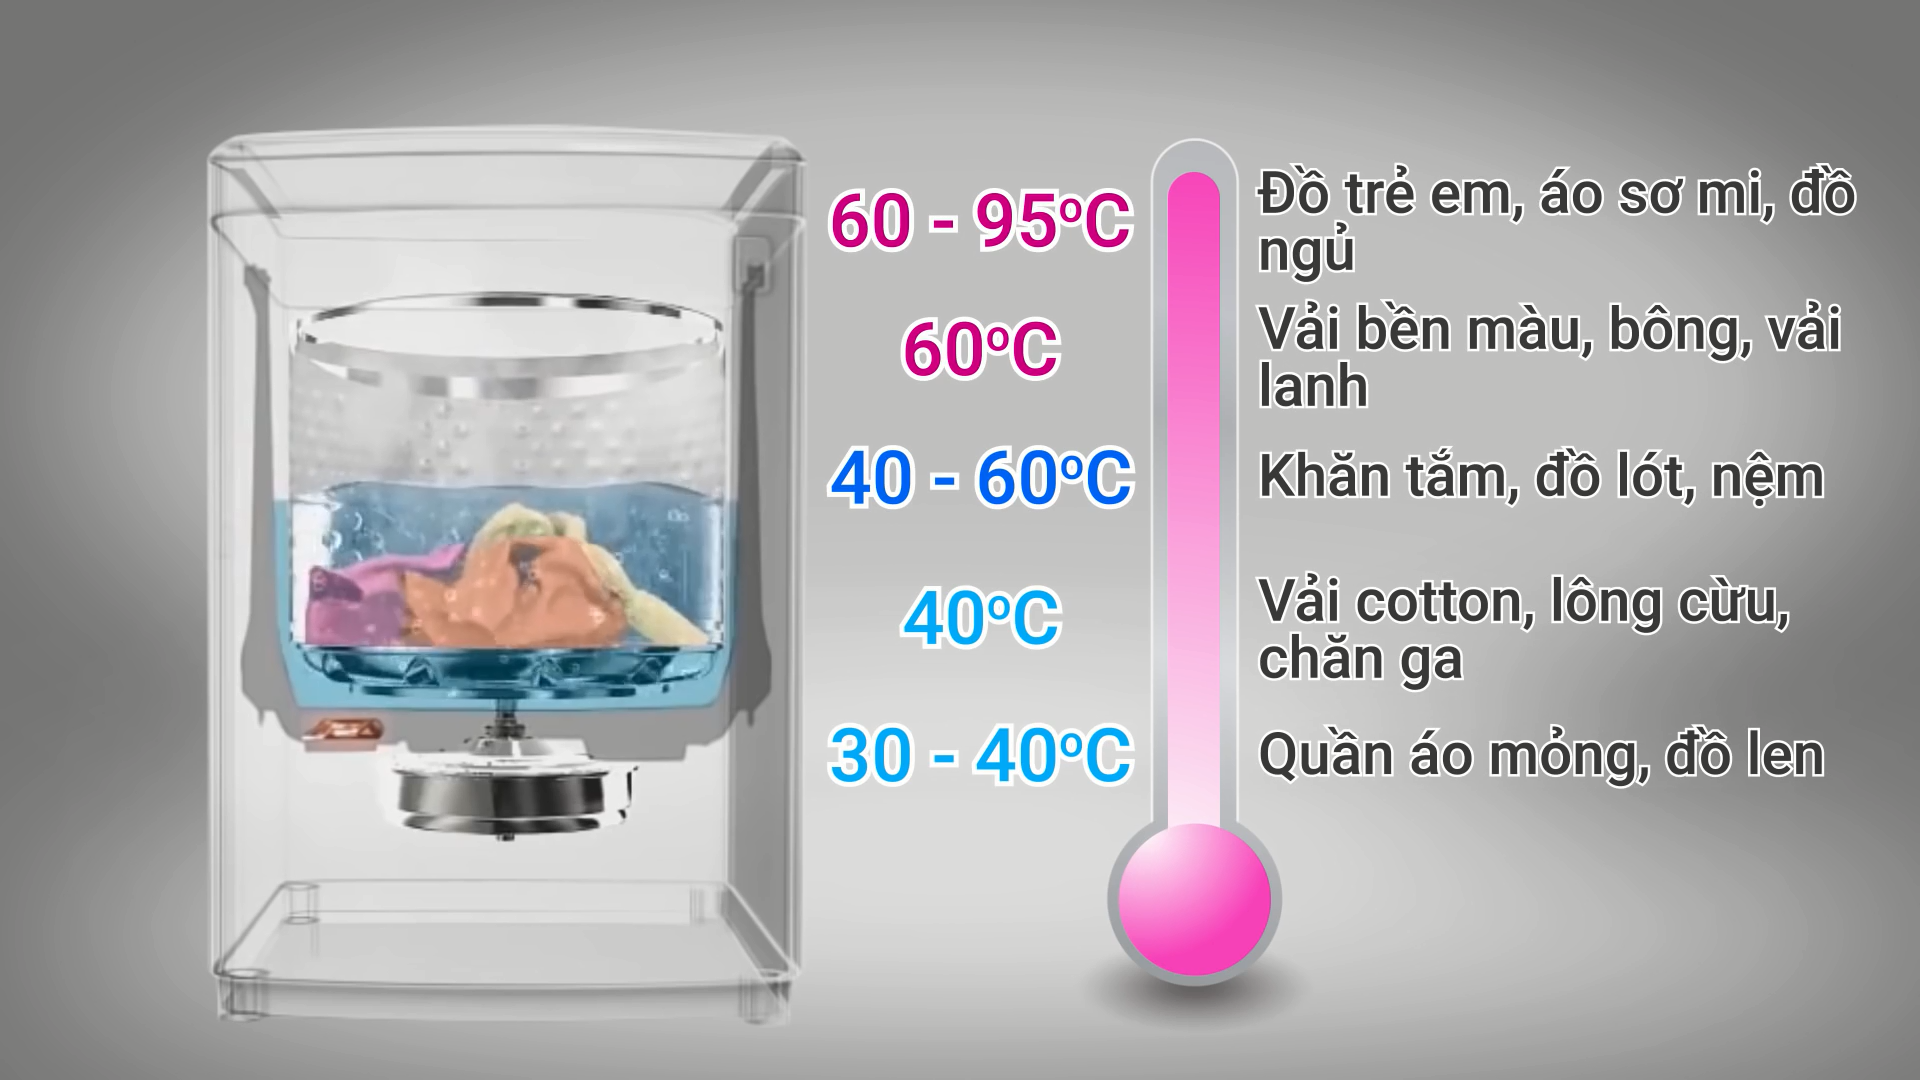 Cài đặt máy giặt có chế độ nước nóng như thế nào?